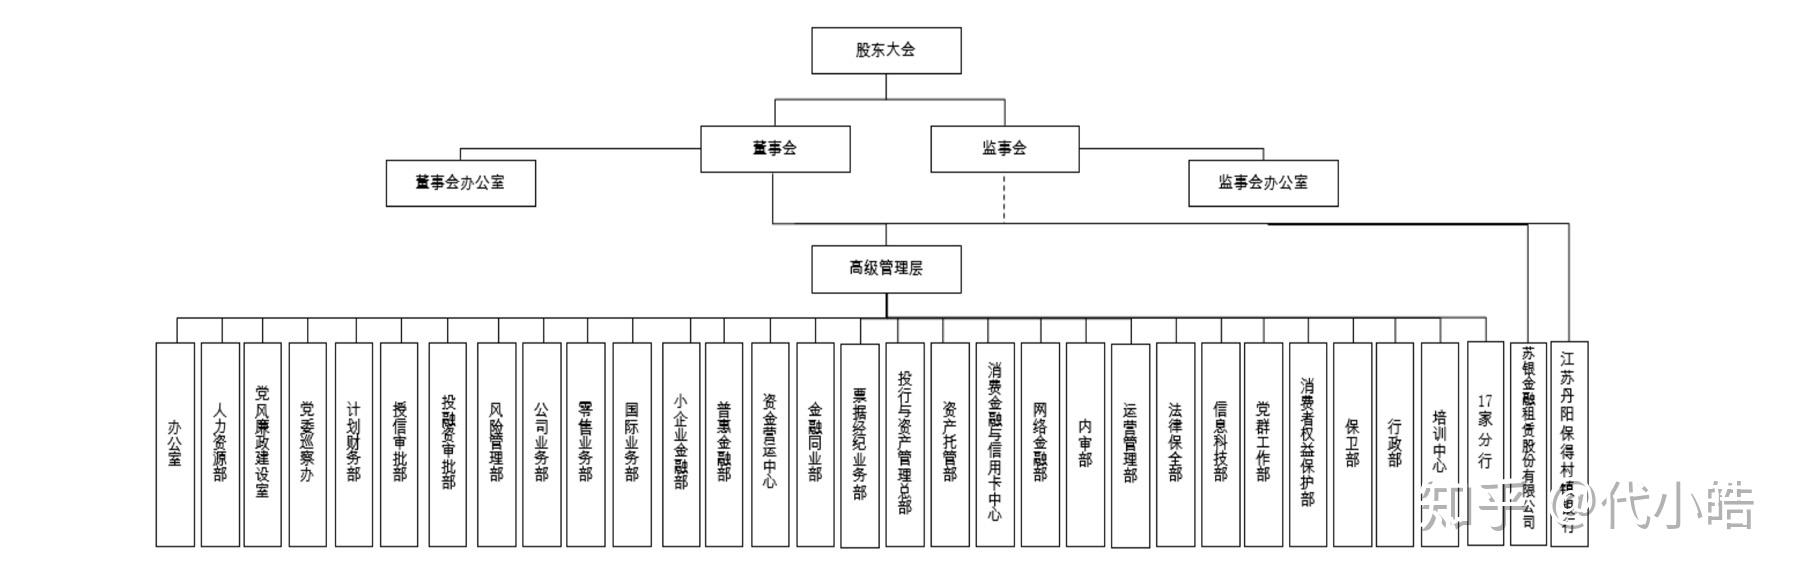 上市城商行组织架构